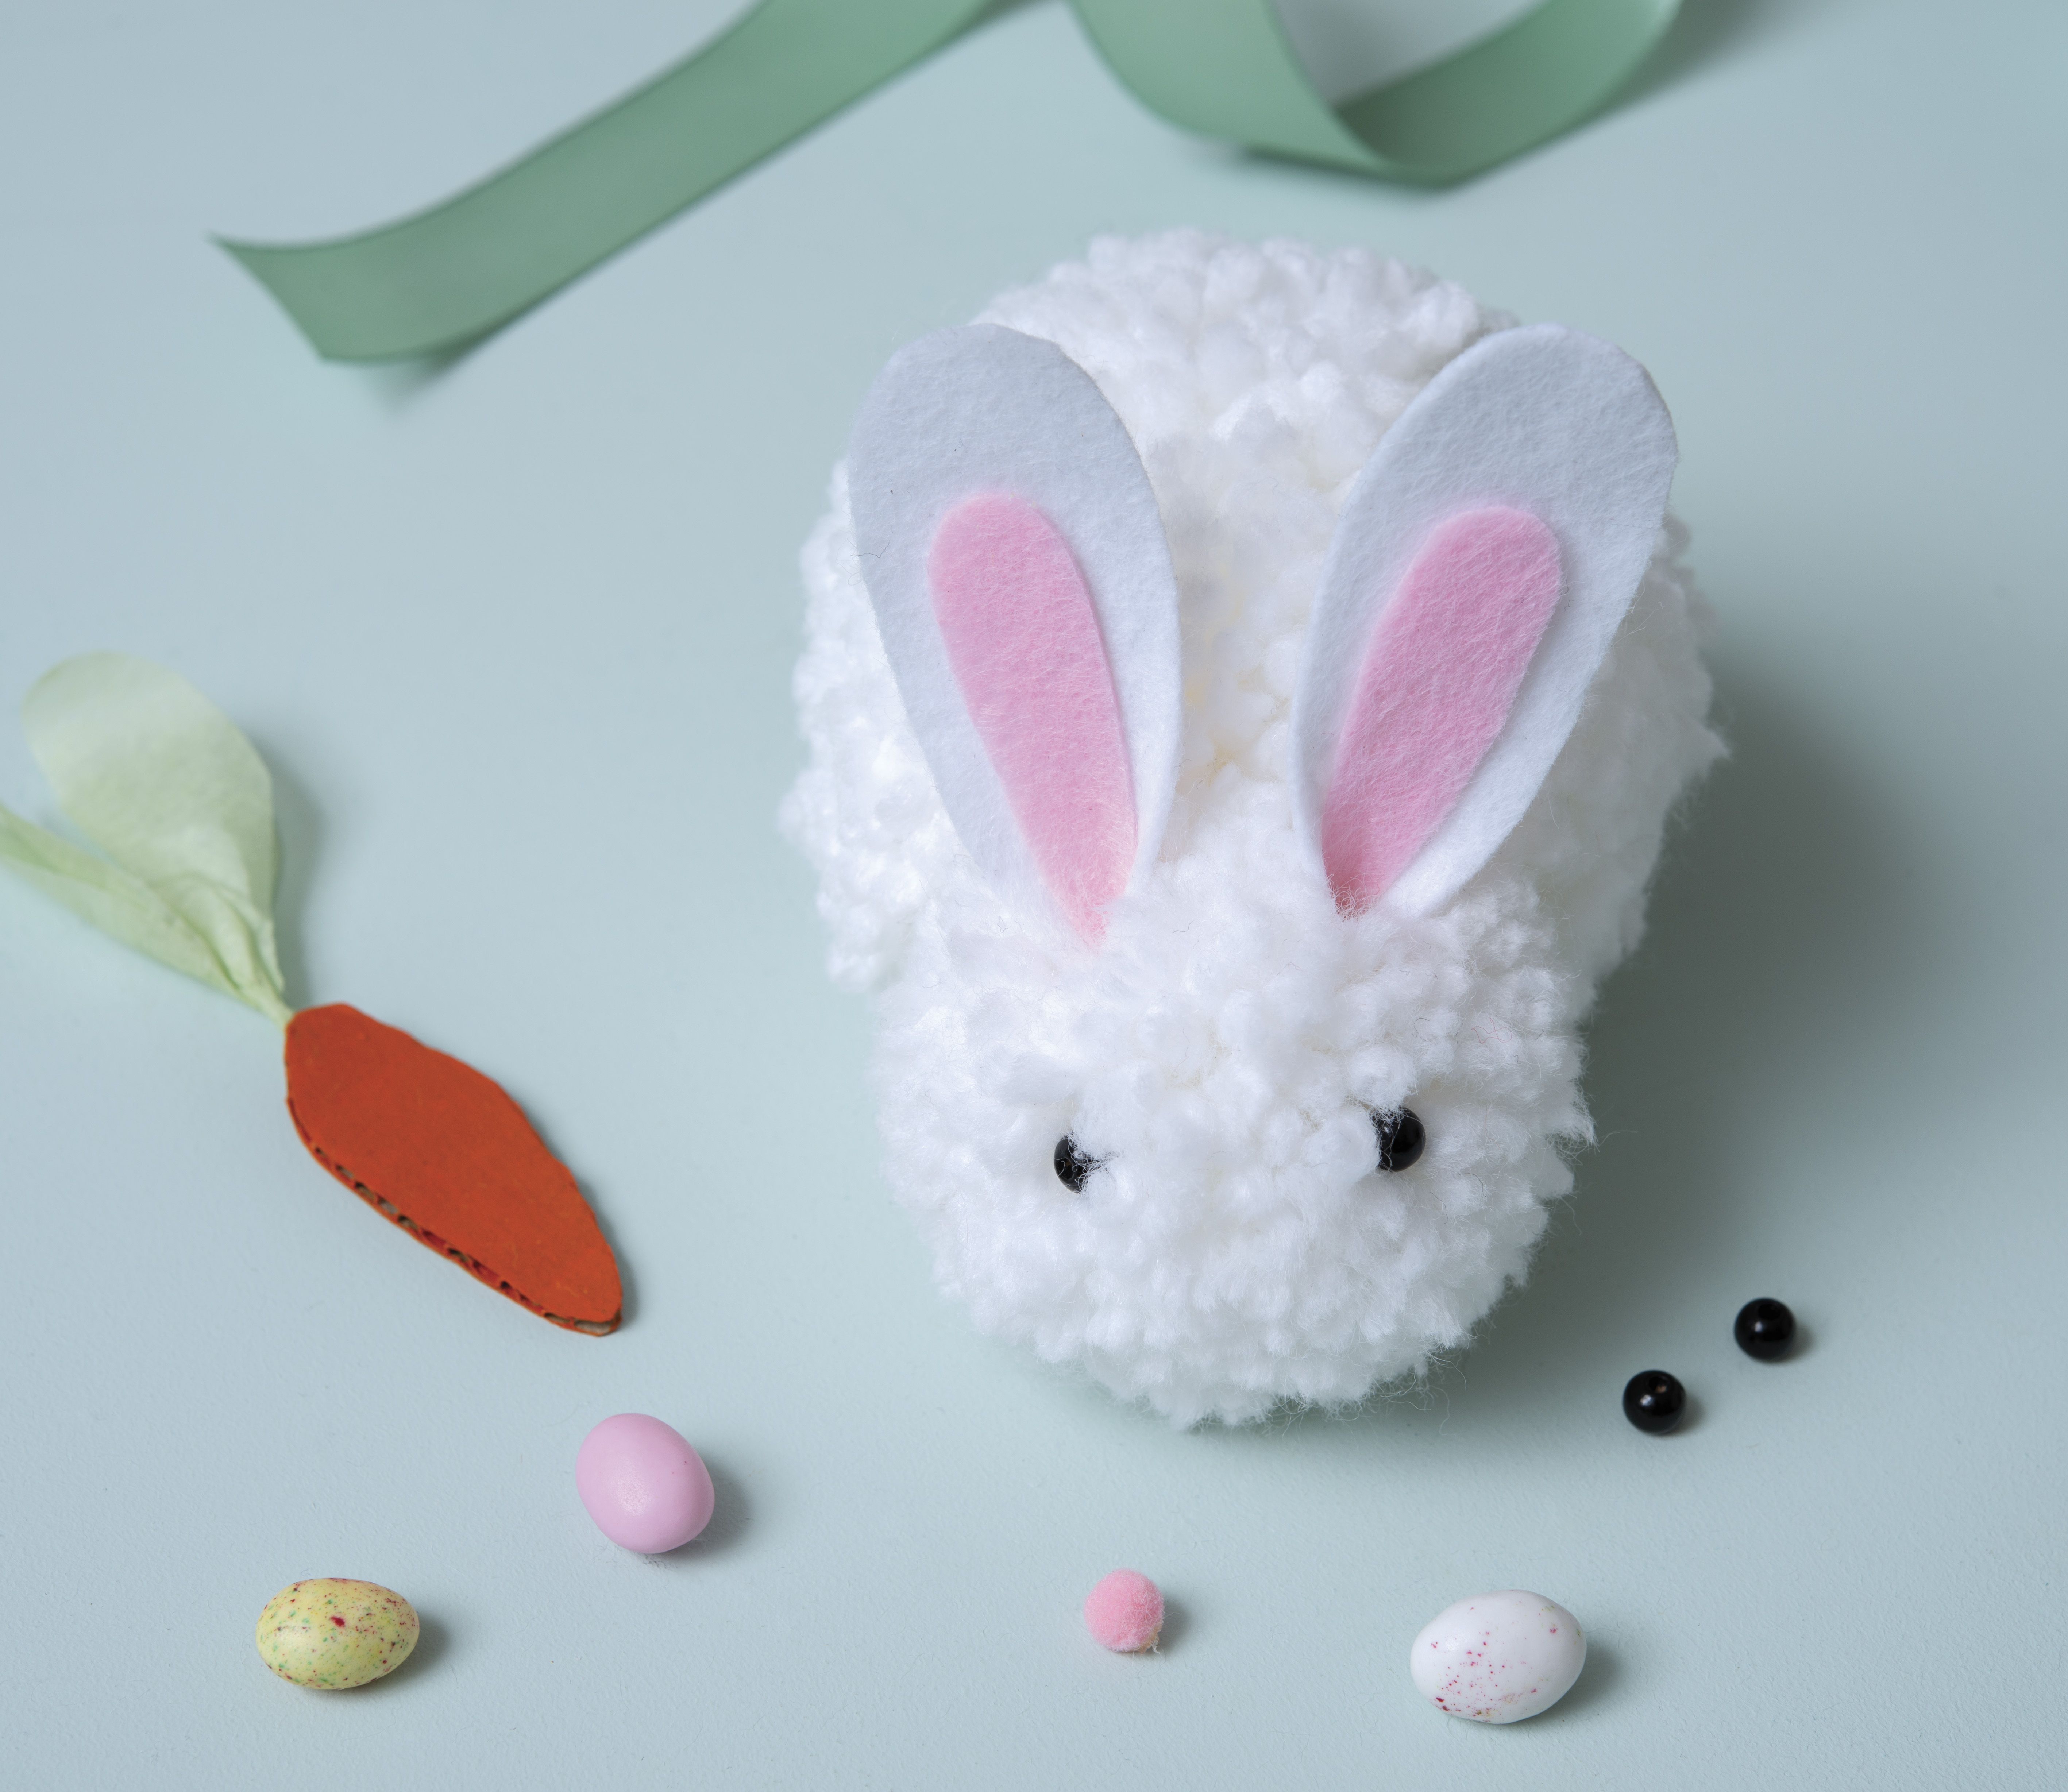 DIY : Faire un lapin en pompon facile - Idées conseils et tuto Pâques